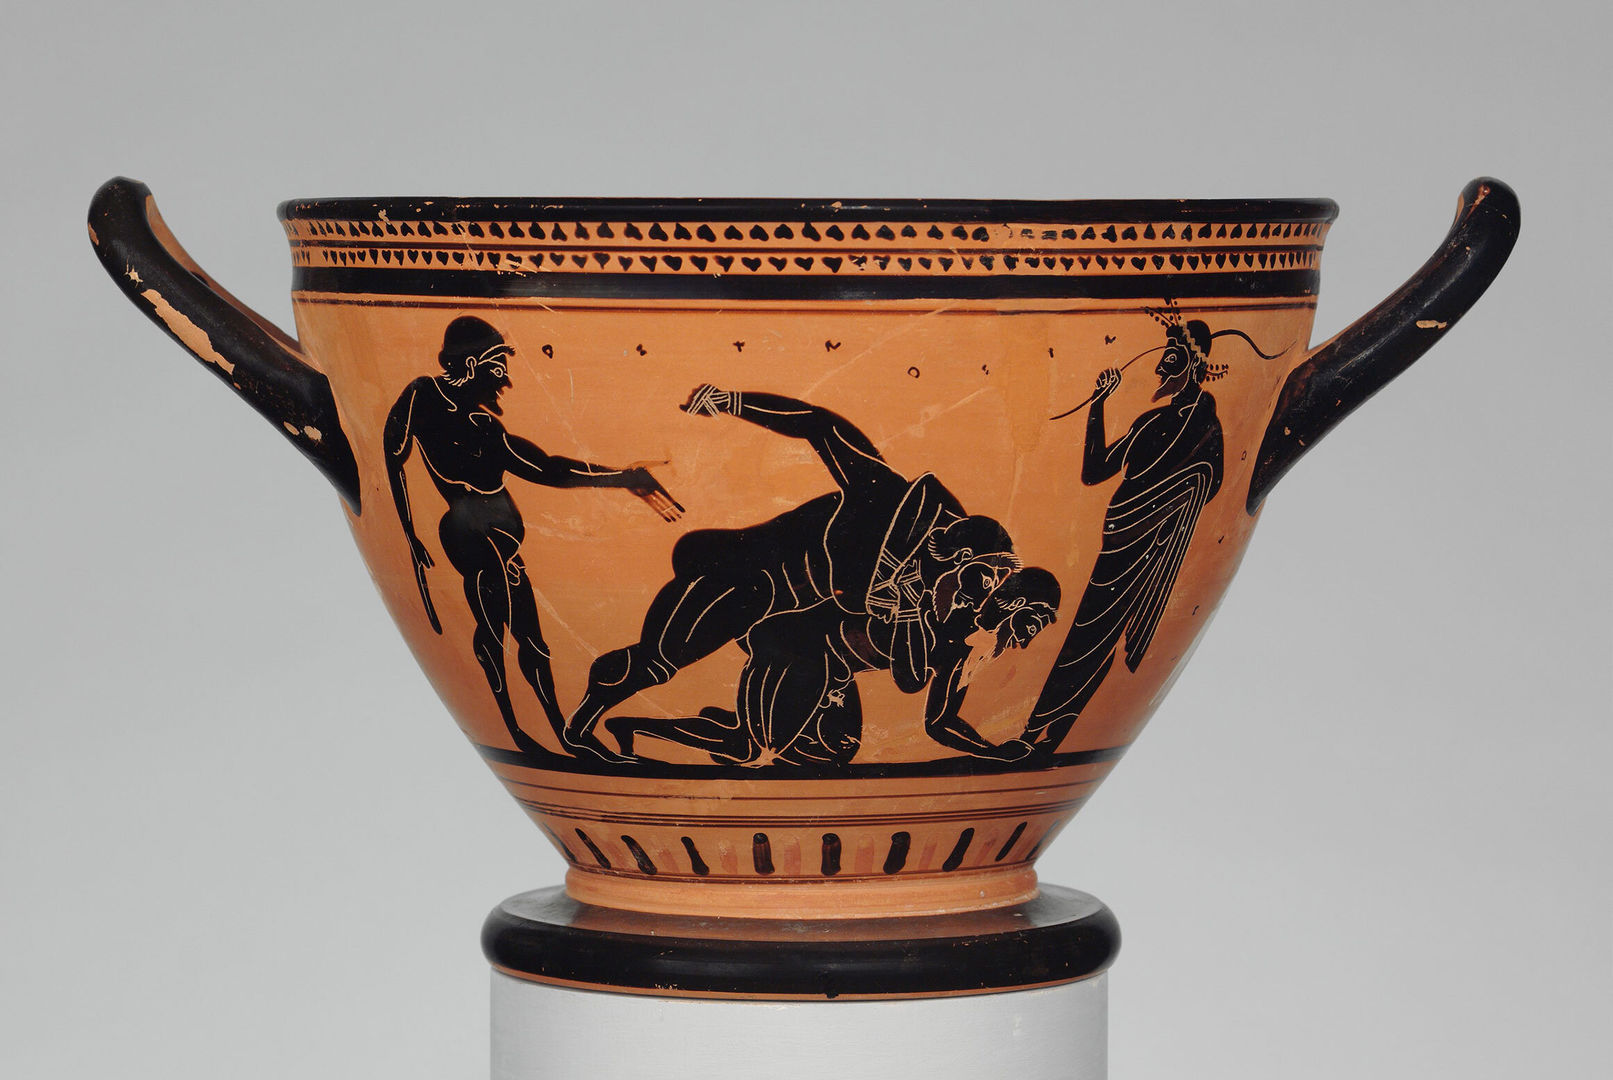 A terracotta vessel depicting two men wrestling